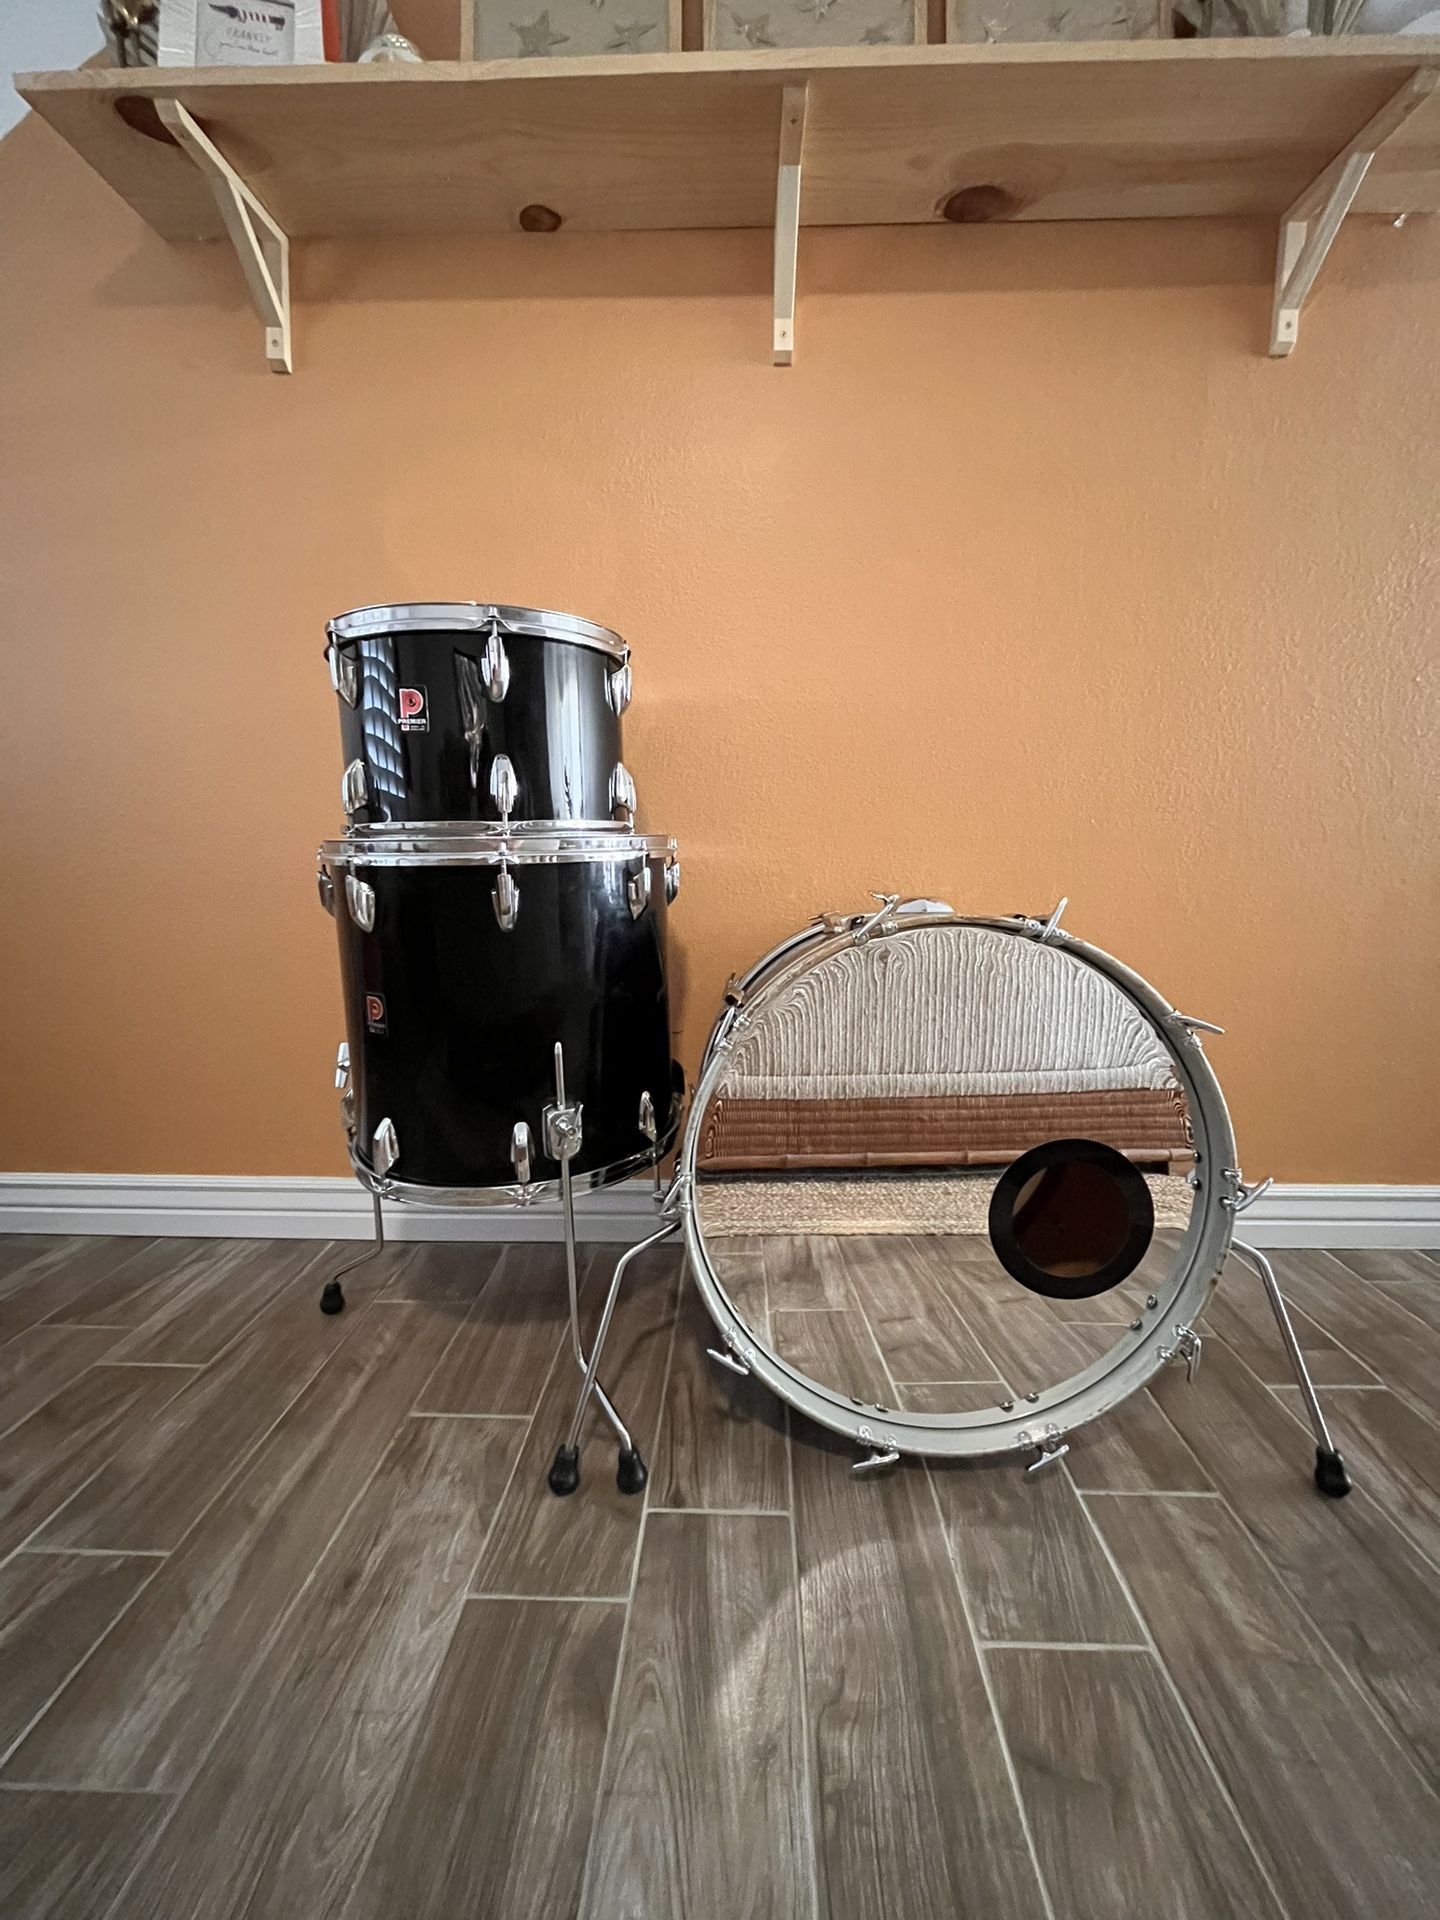 Premier Soundwave drum kit